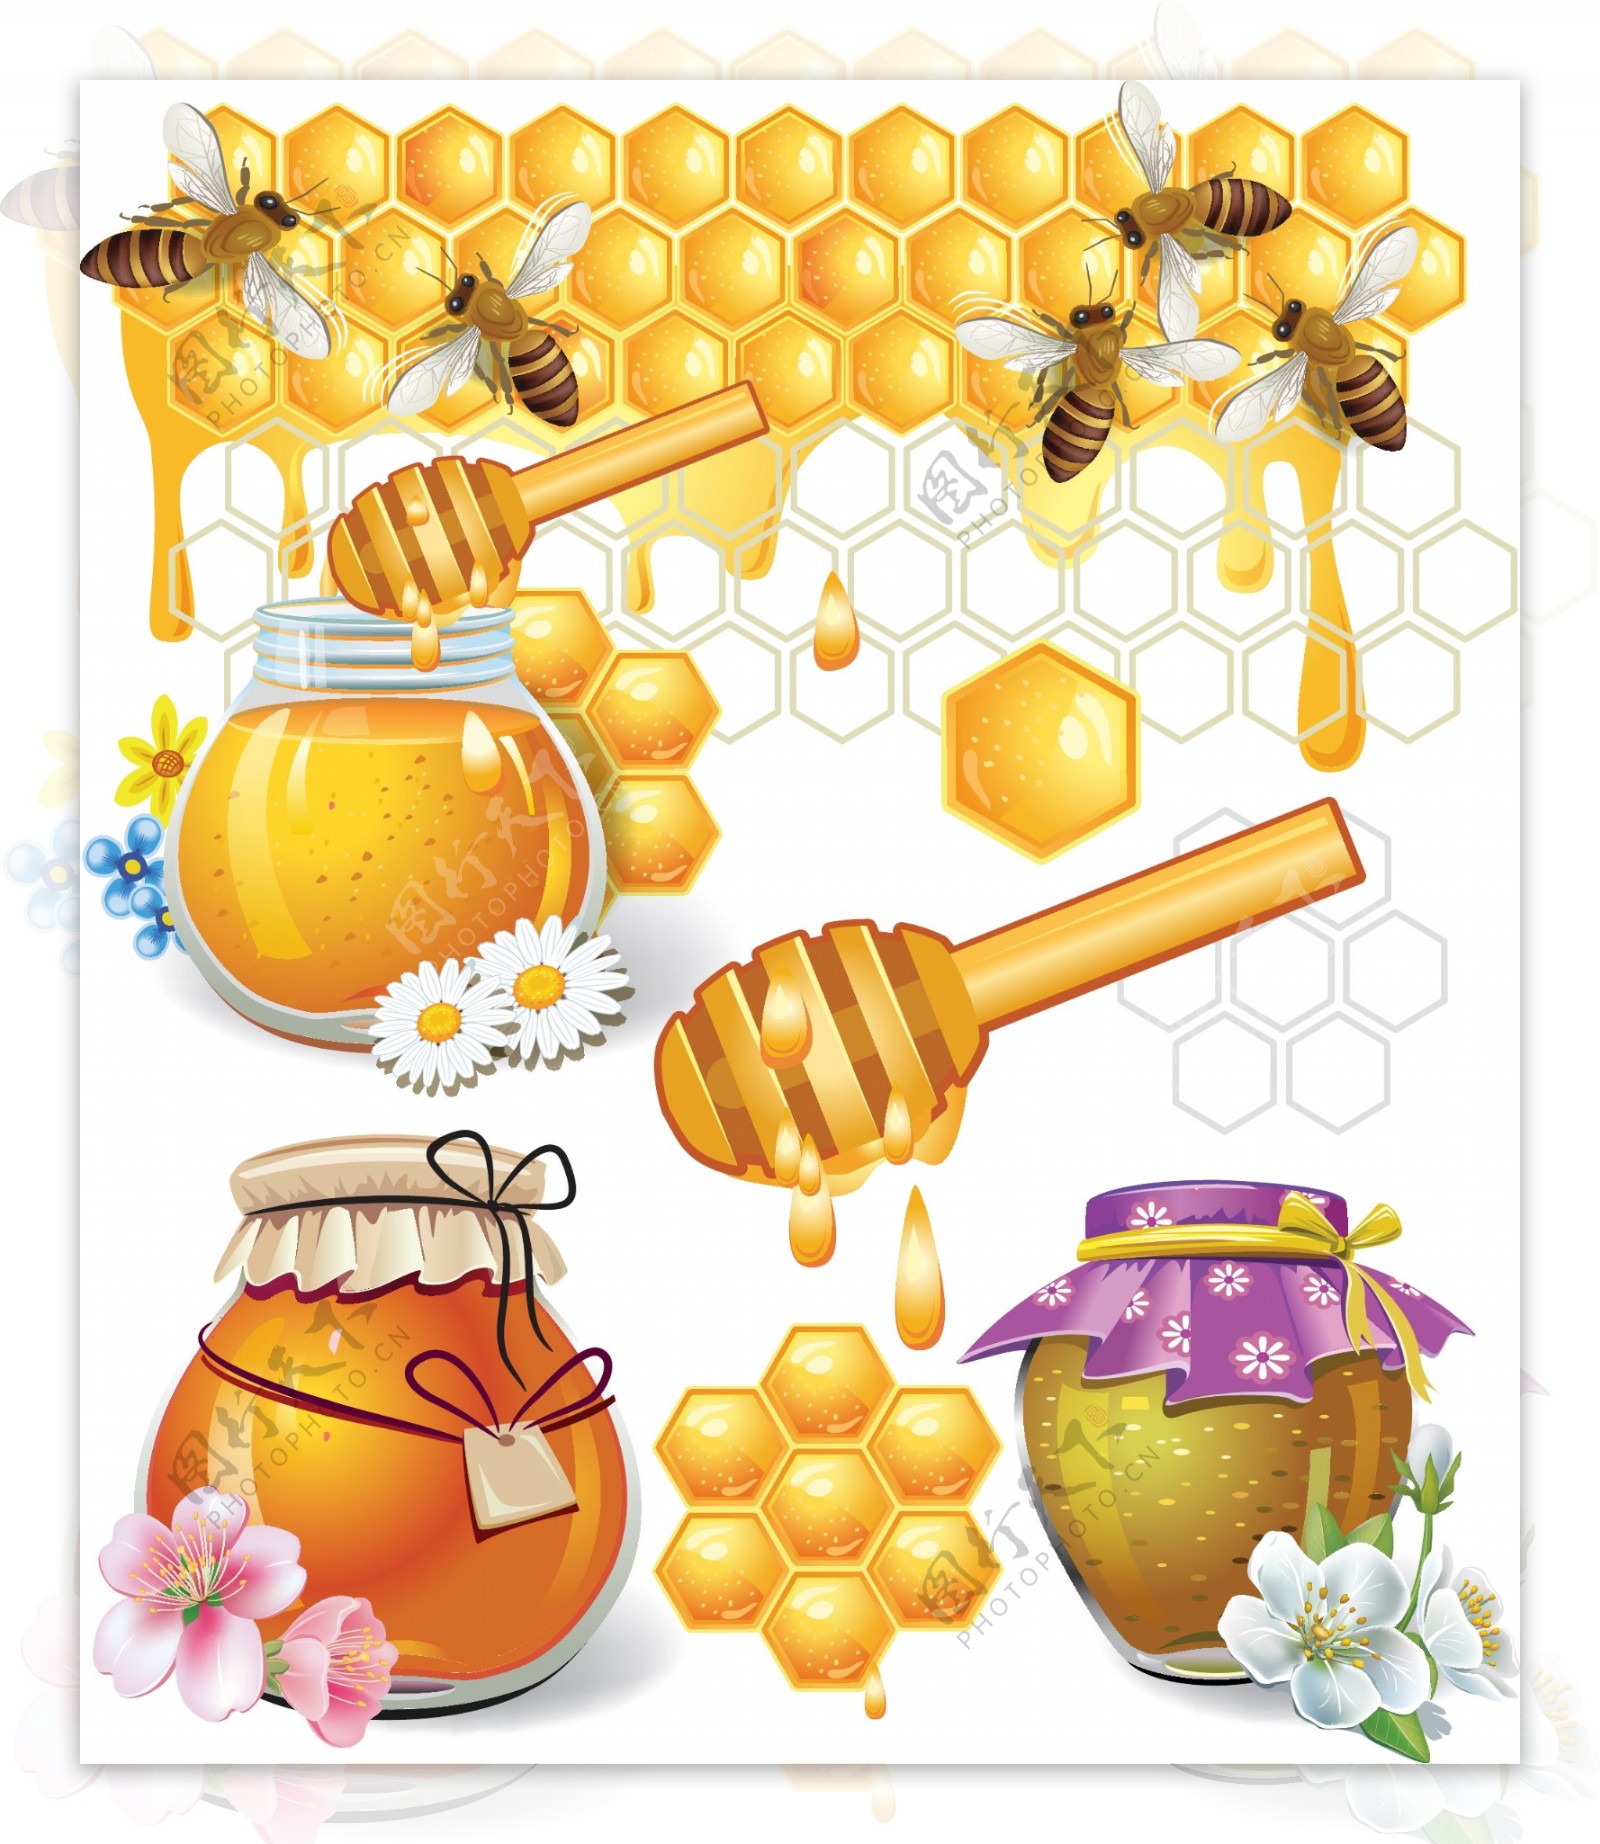 蜜蜂蜂蜜图片